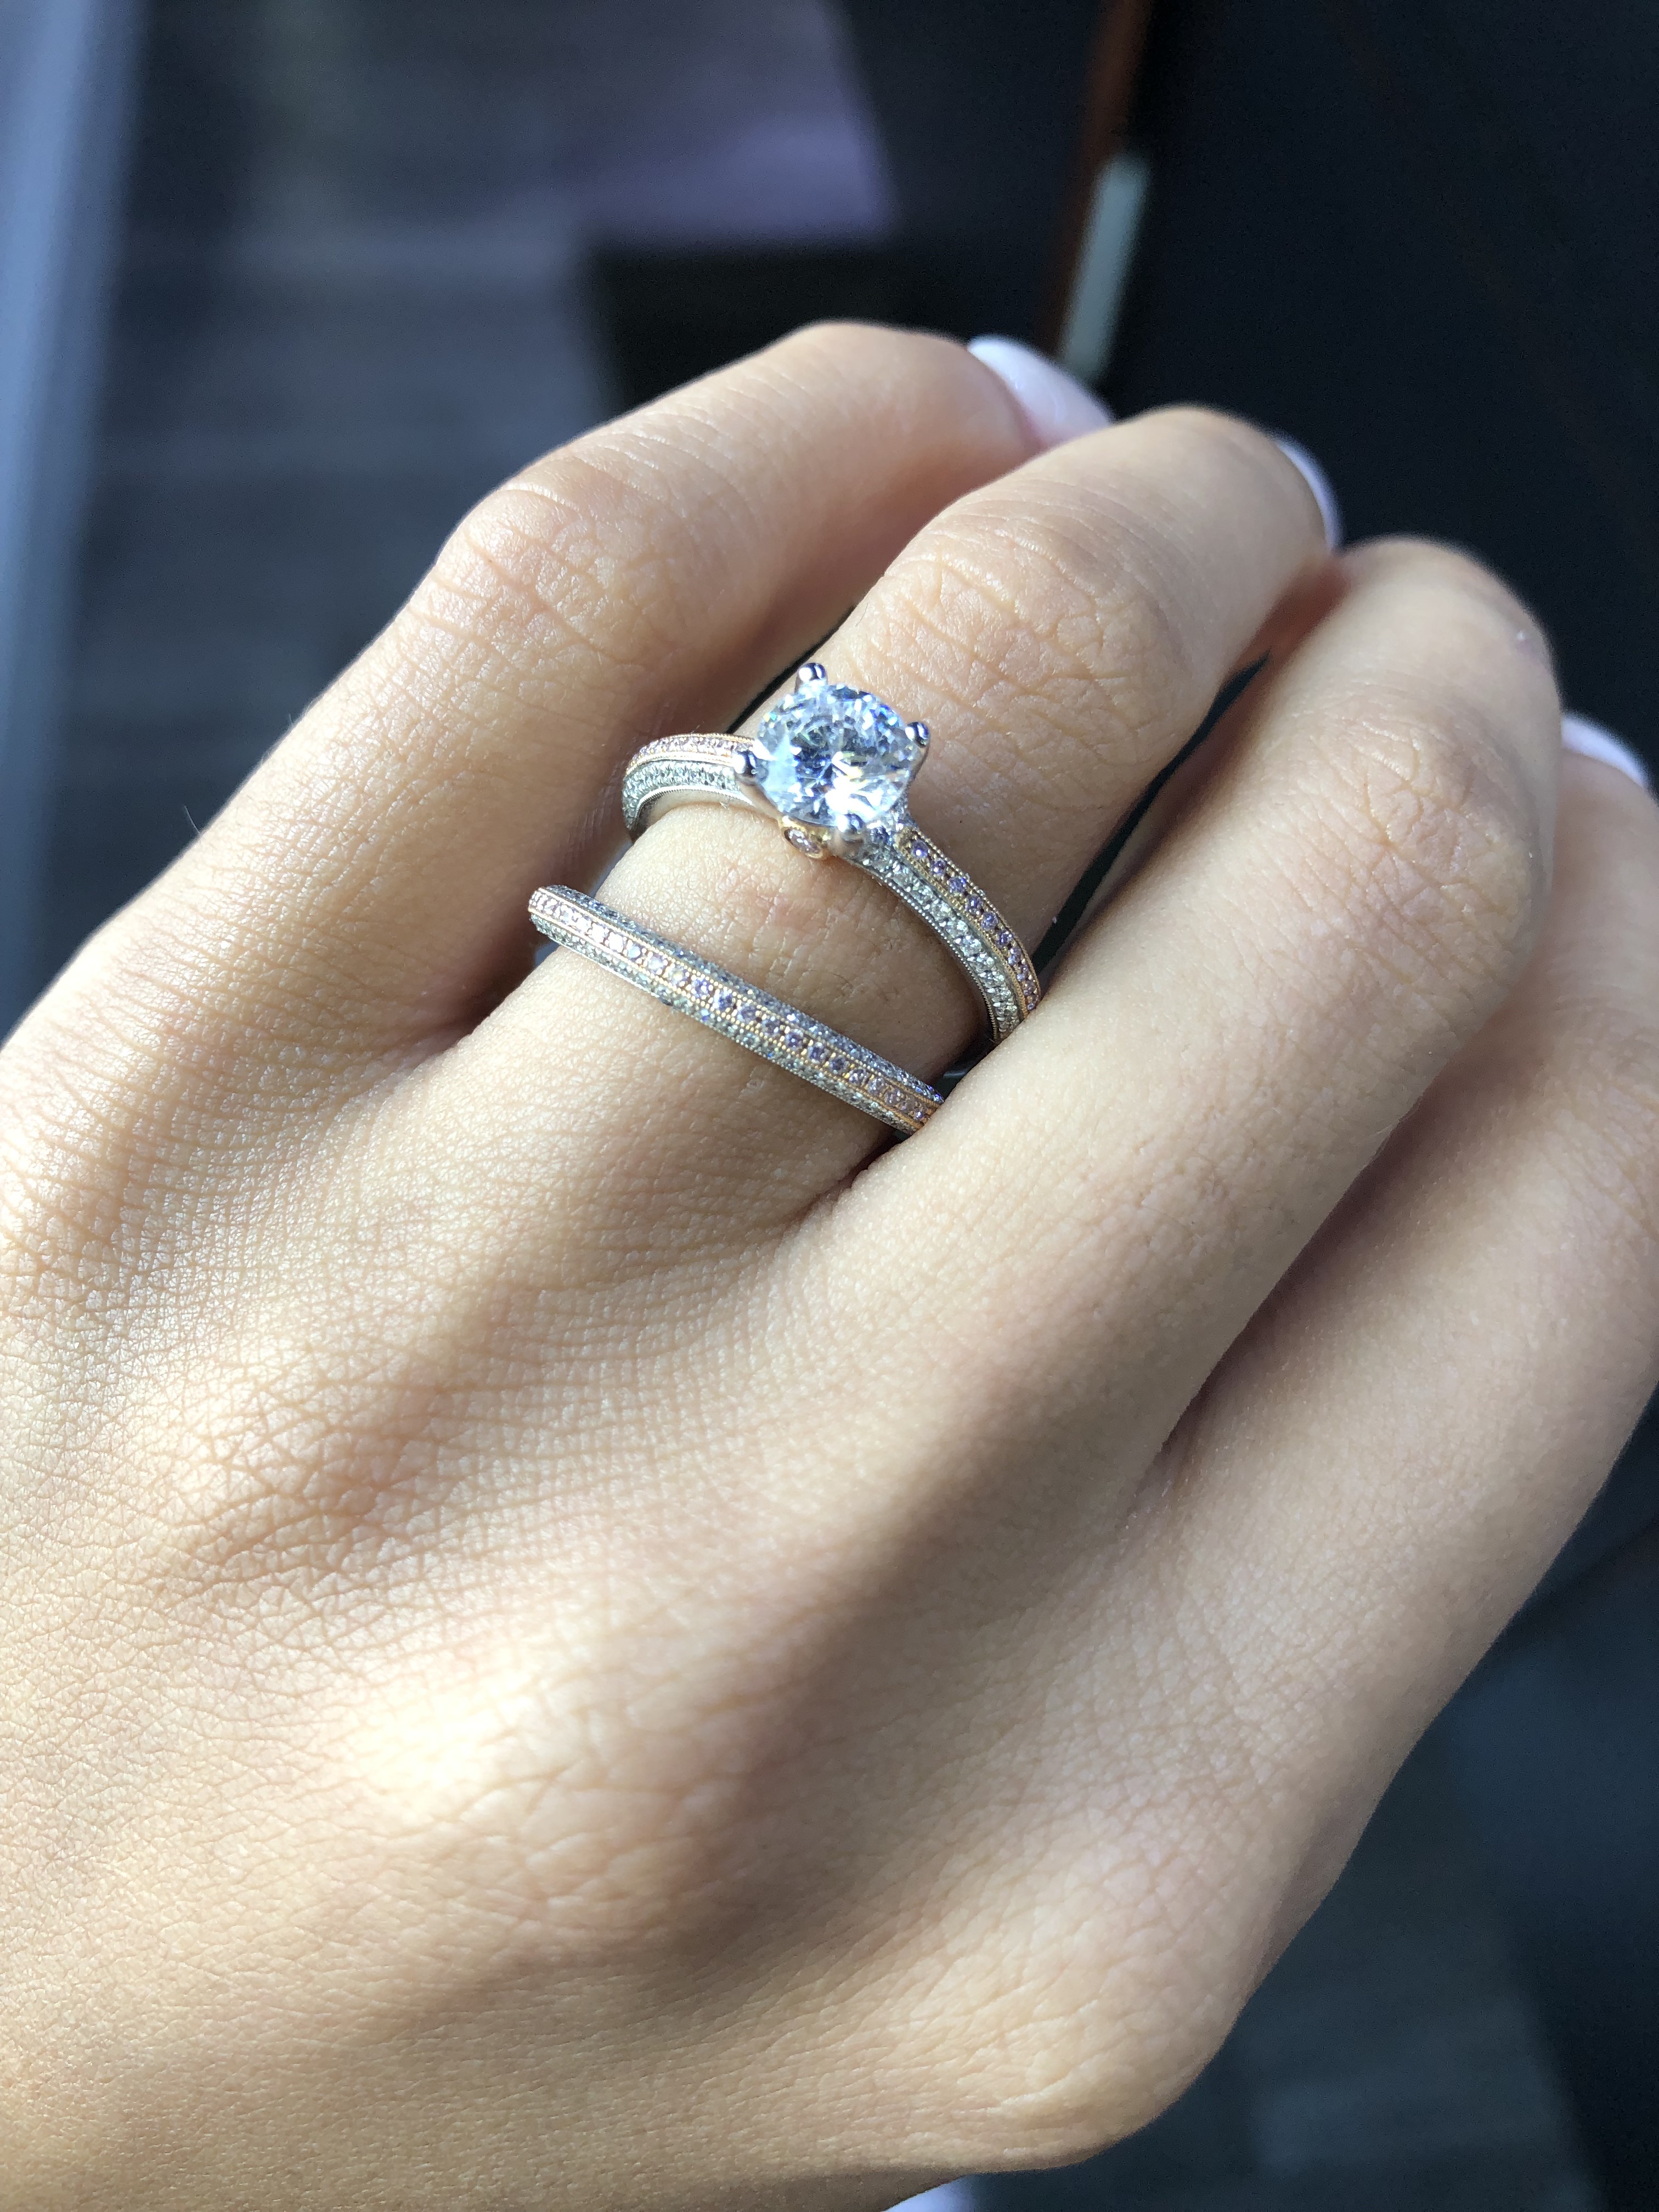 engagement vs wedding ring simon g set rose gold